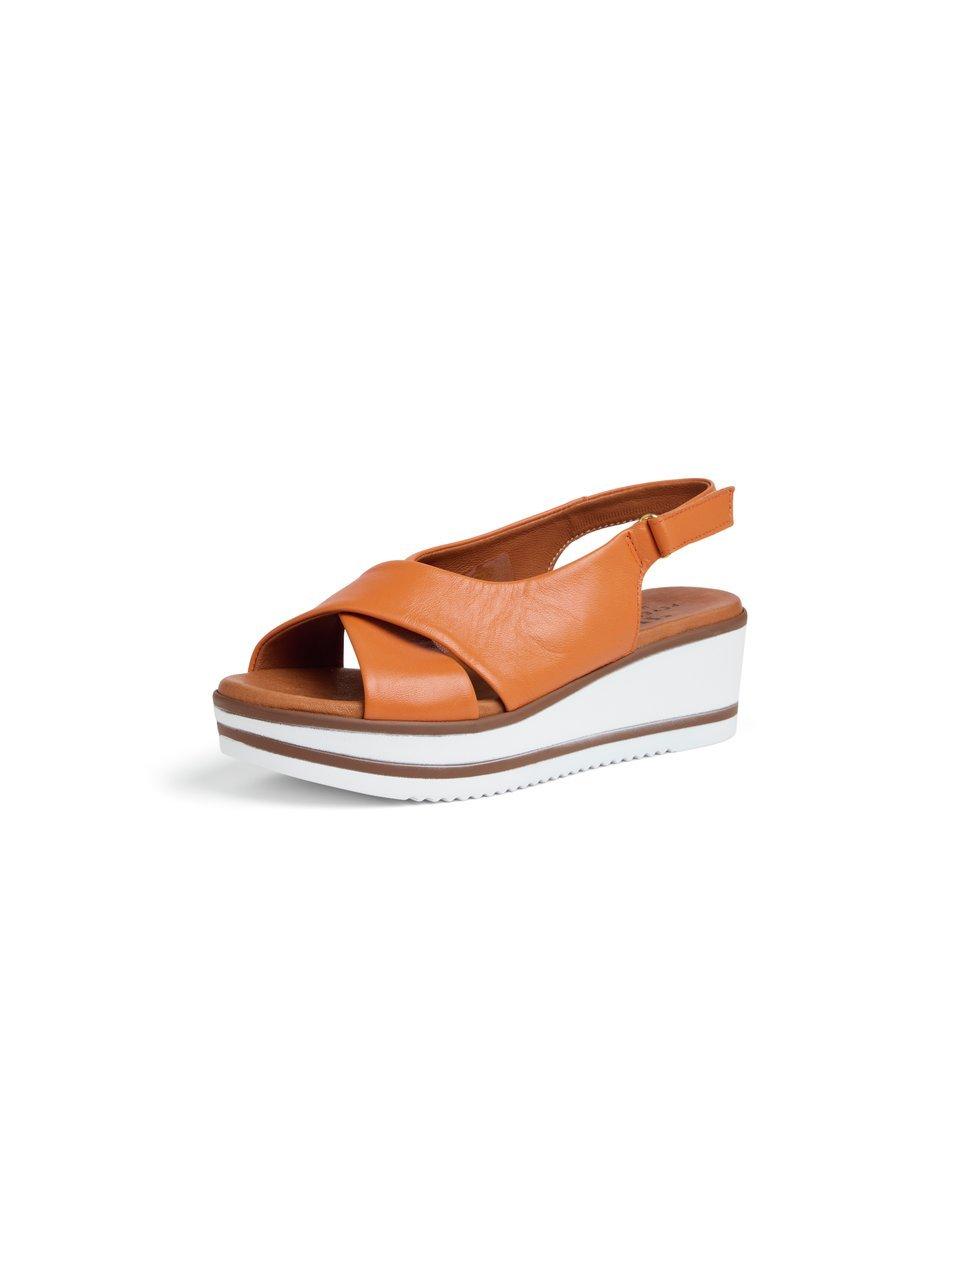 Peter Hahn - Les sandales 100% cuir